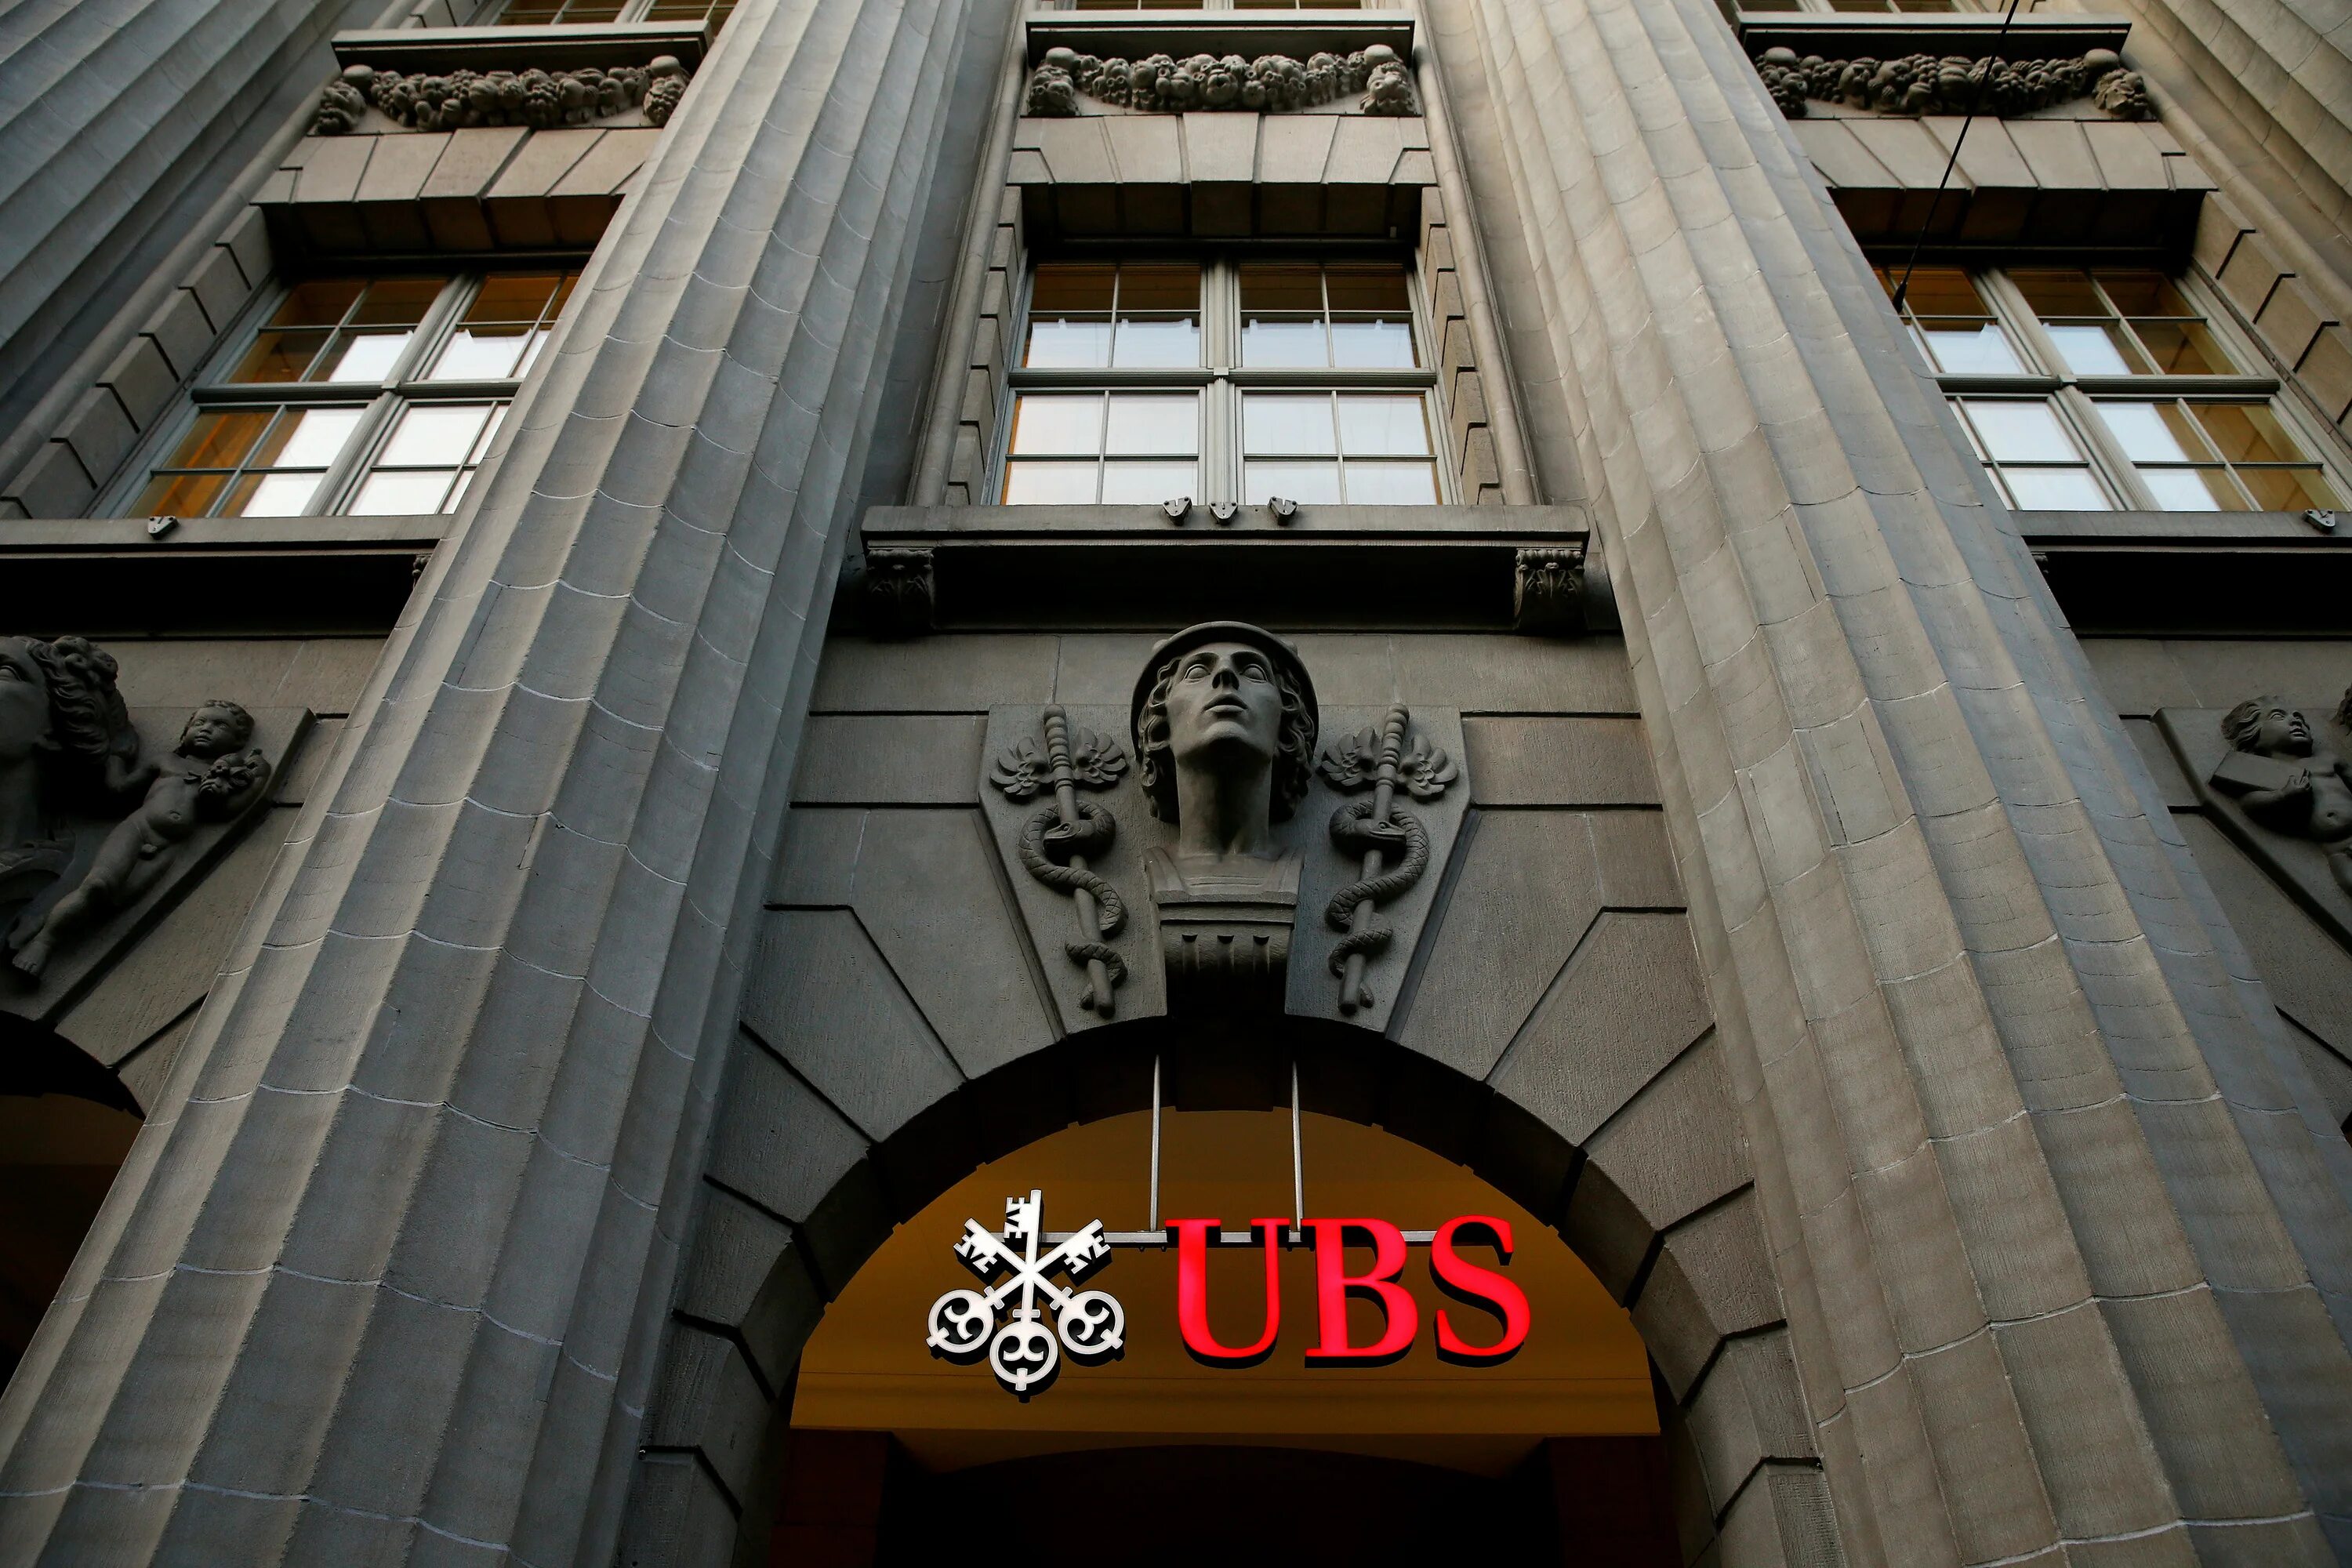 Банку ubs. Банк ЮБС Швейцария. Национальный банк Швейцарии в Цюрихе. Банки Швейцарии UBS. Швейцарский национальный банк (SNB).